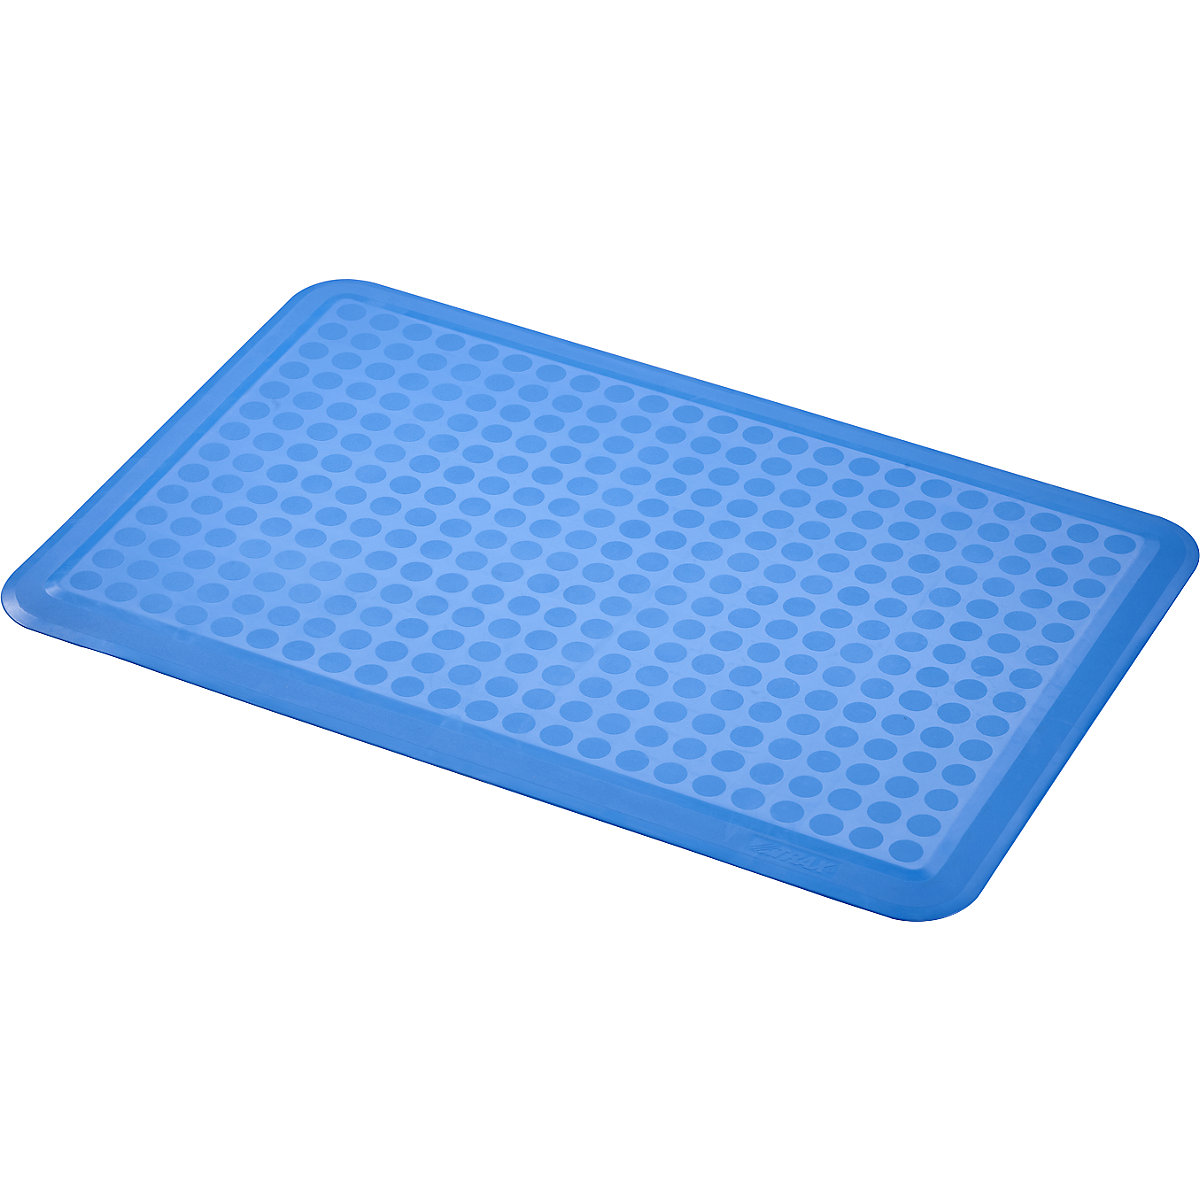 Sani-Flex™ anti-fatigue matting – NOTRAX